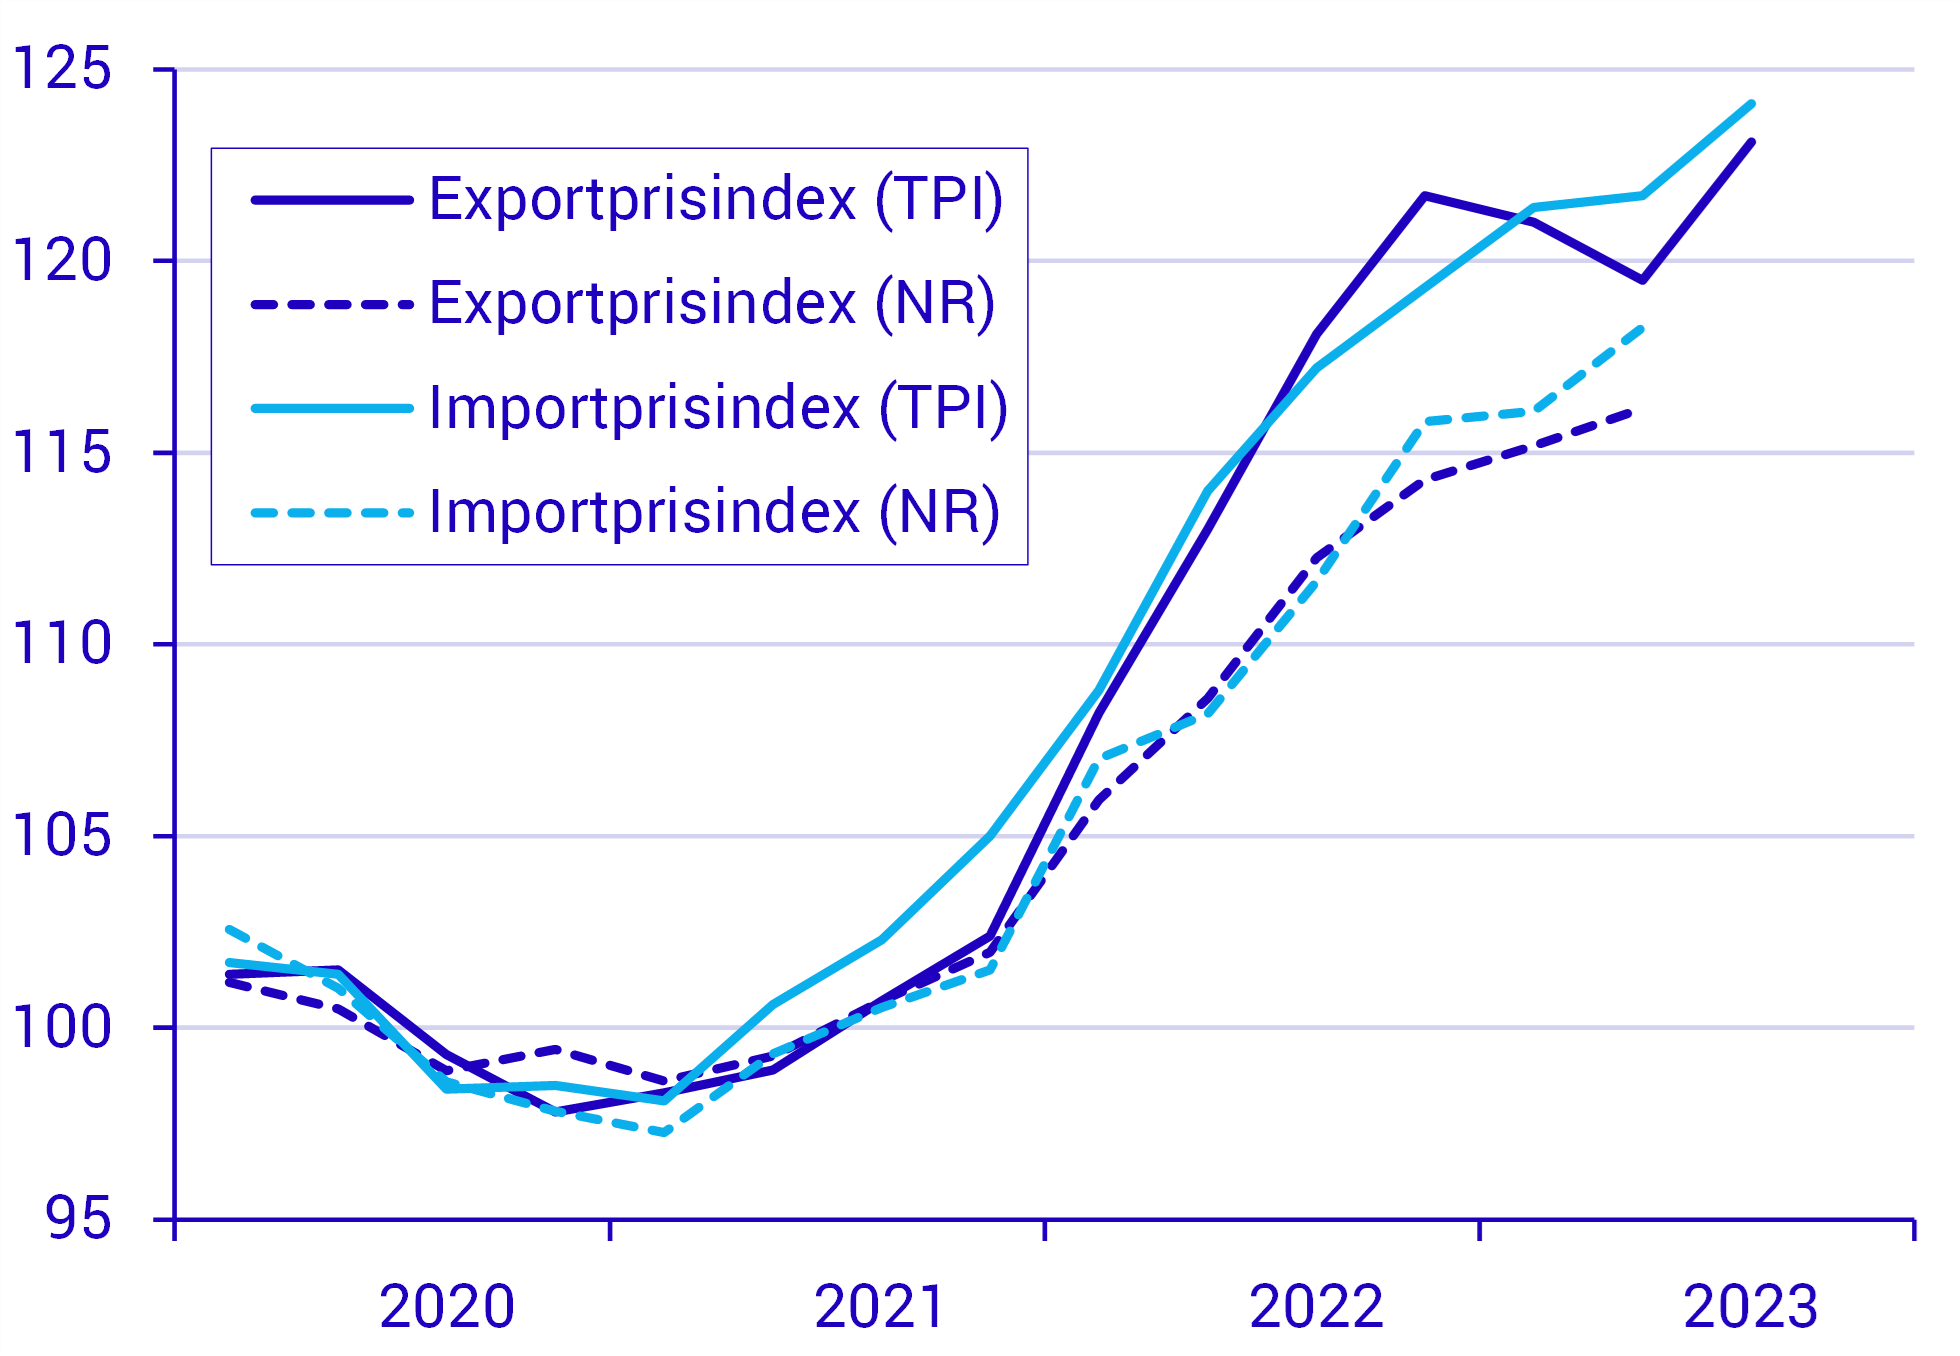 Vissa skillnader i prisutvecklingen mellan tjänsteprisindex och nationalräkenskaperna Prisutveckling för export och import av tjänster enligt tjänsteprisindex (TPI) samt nationalräkenskaperna (NR), index 2020=100